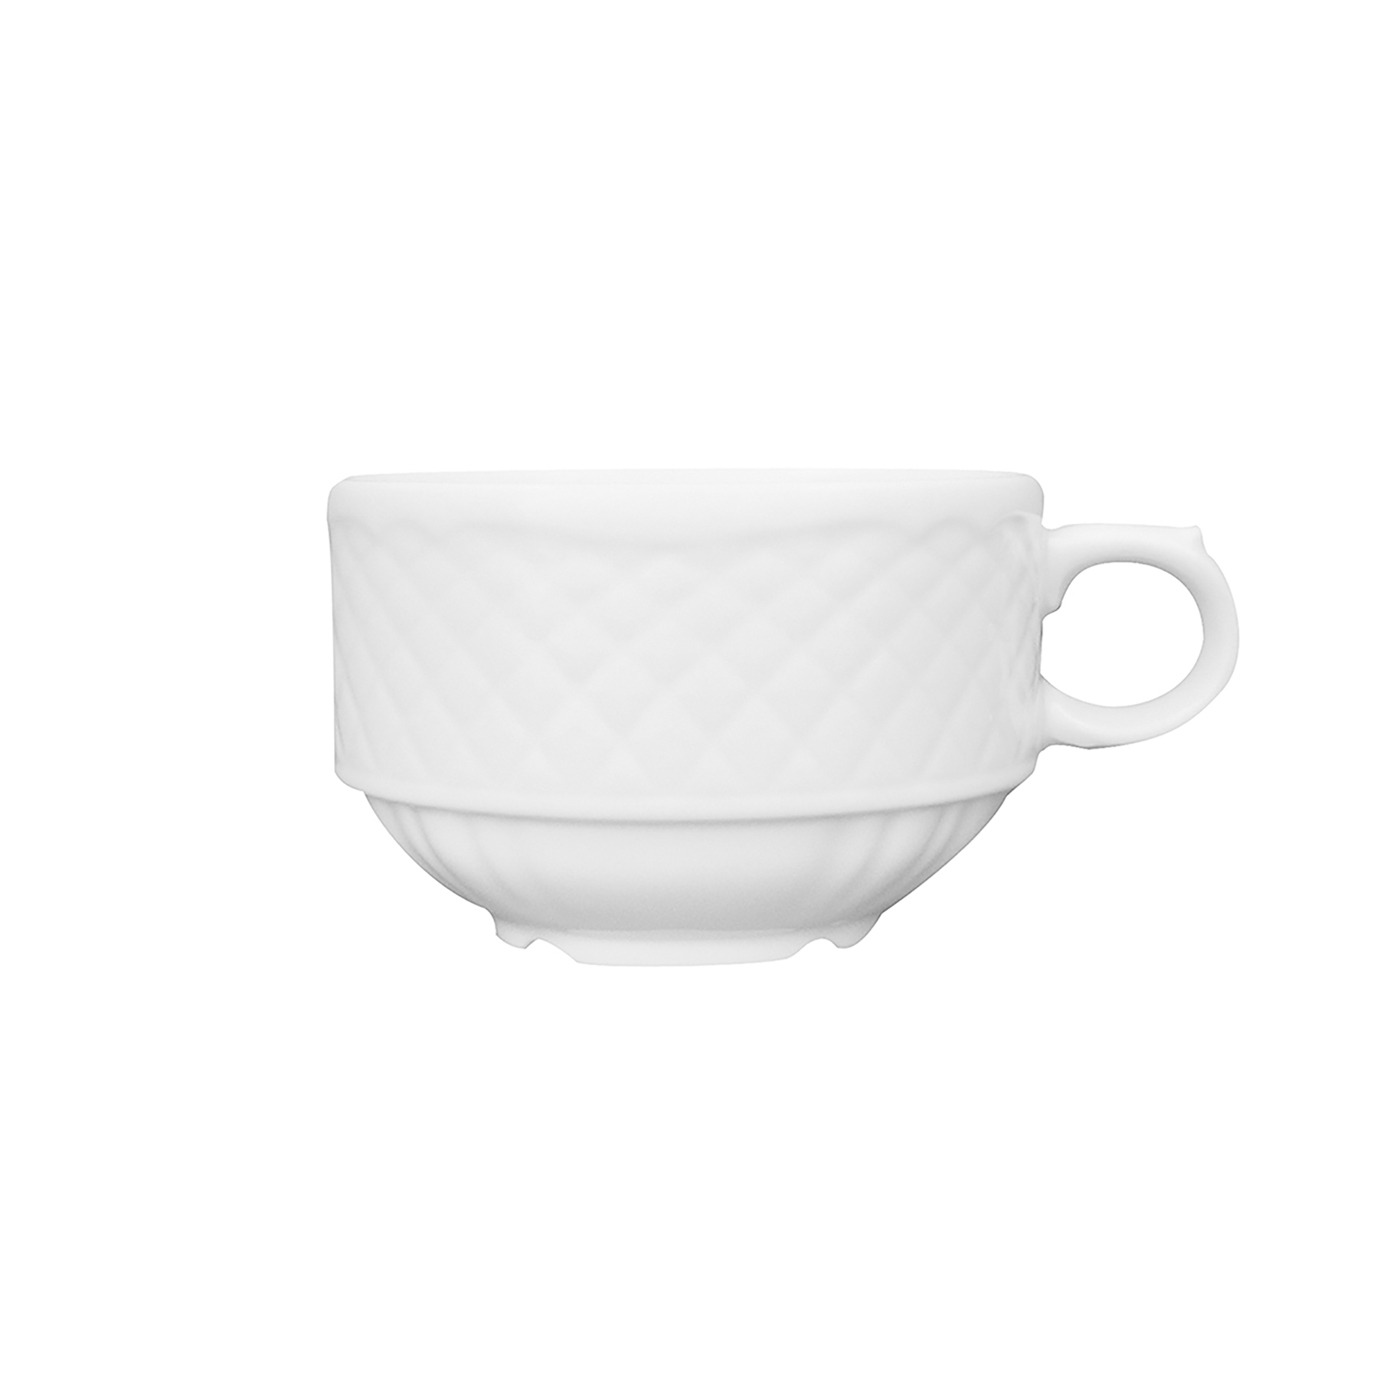 Kaffee-Obertasse - niedrige Form - Inhalt 0,18 ltr Form LA REINE - uni weiß - ohne Untertasse